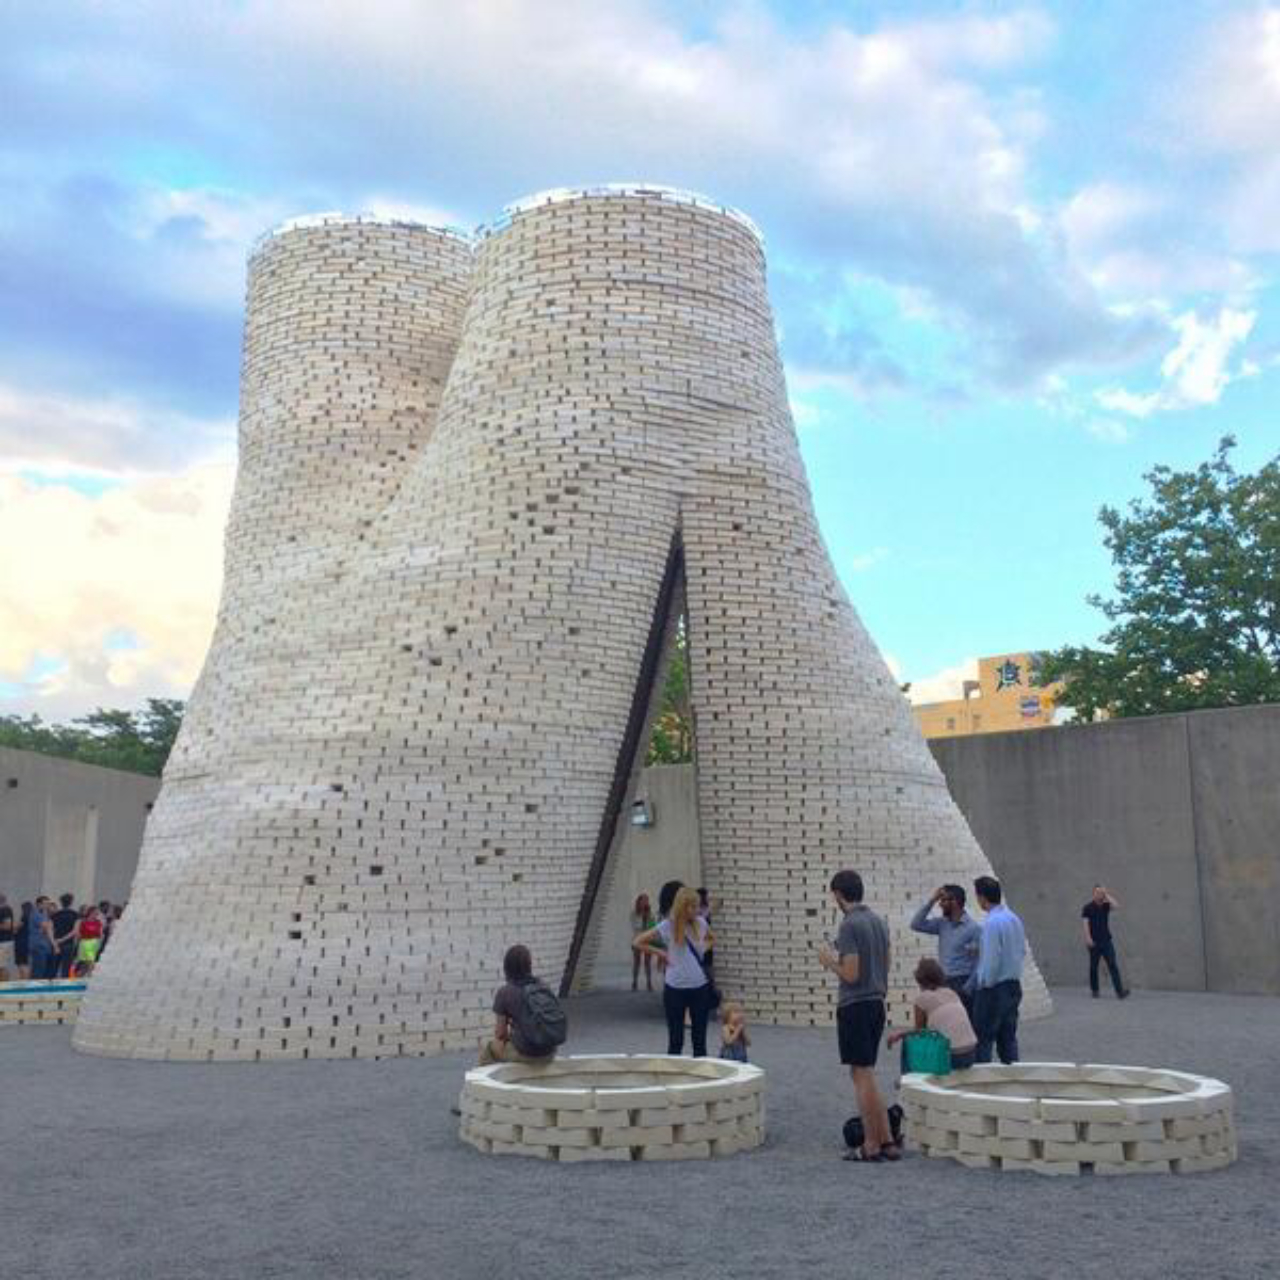 Torre de tijolos orgânicos Hy-Fi, inaugurada no MoMA PS1 em 2014. Foto: divulgação/Inhabitat